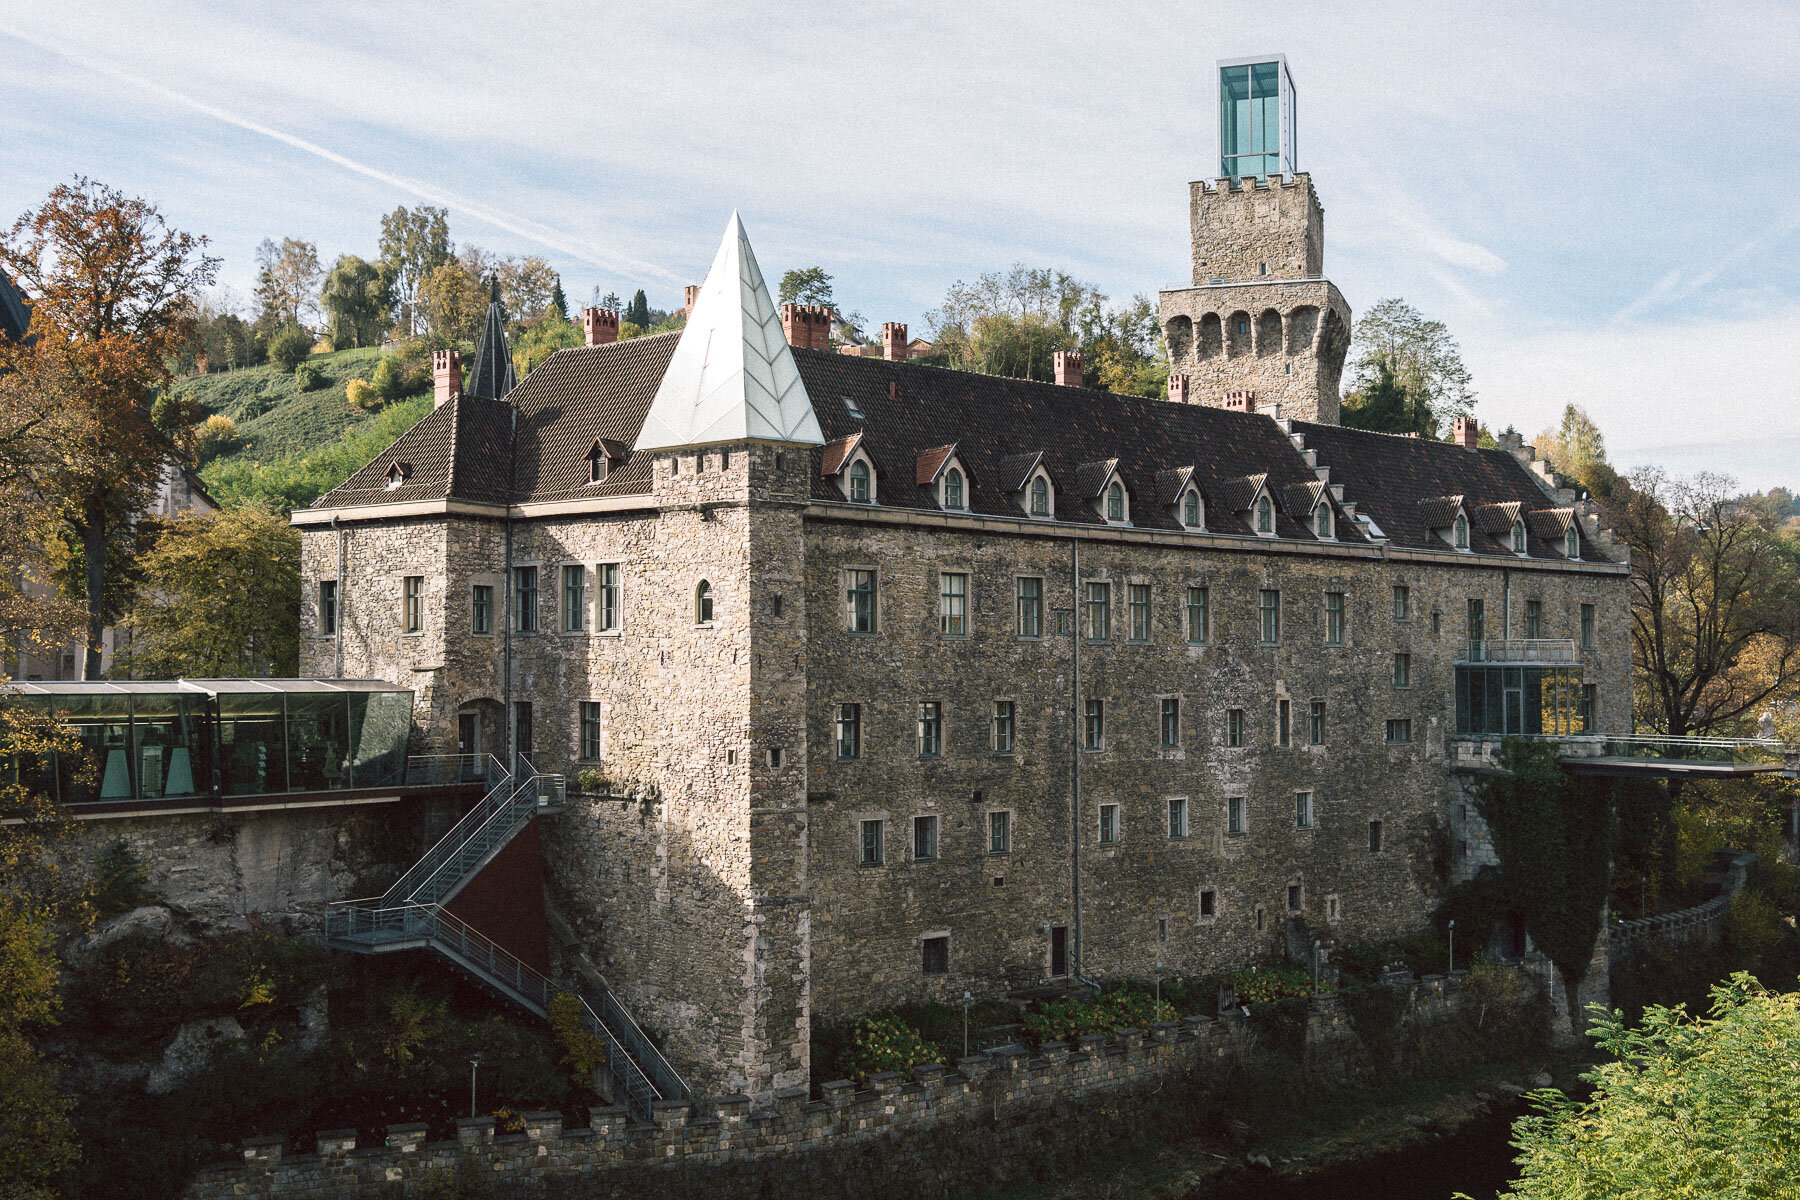  Das Rothschildschloss gehört zu den schönsten Schlössern Österreichs 